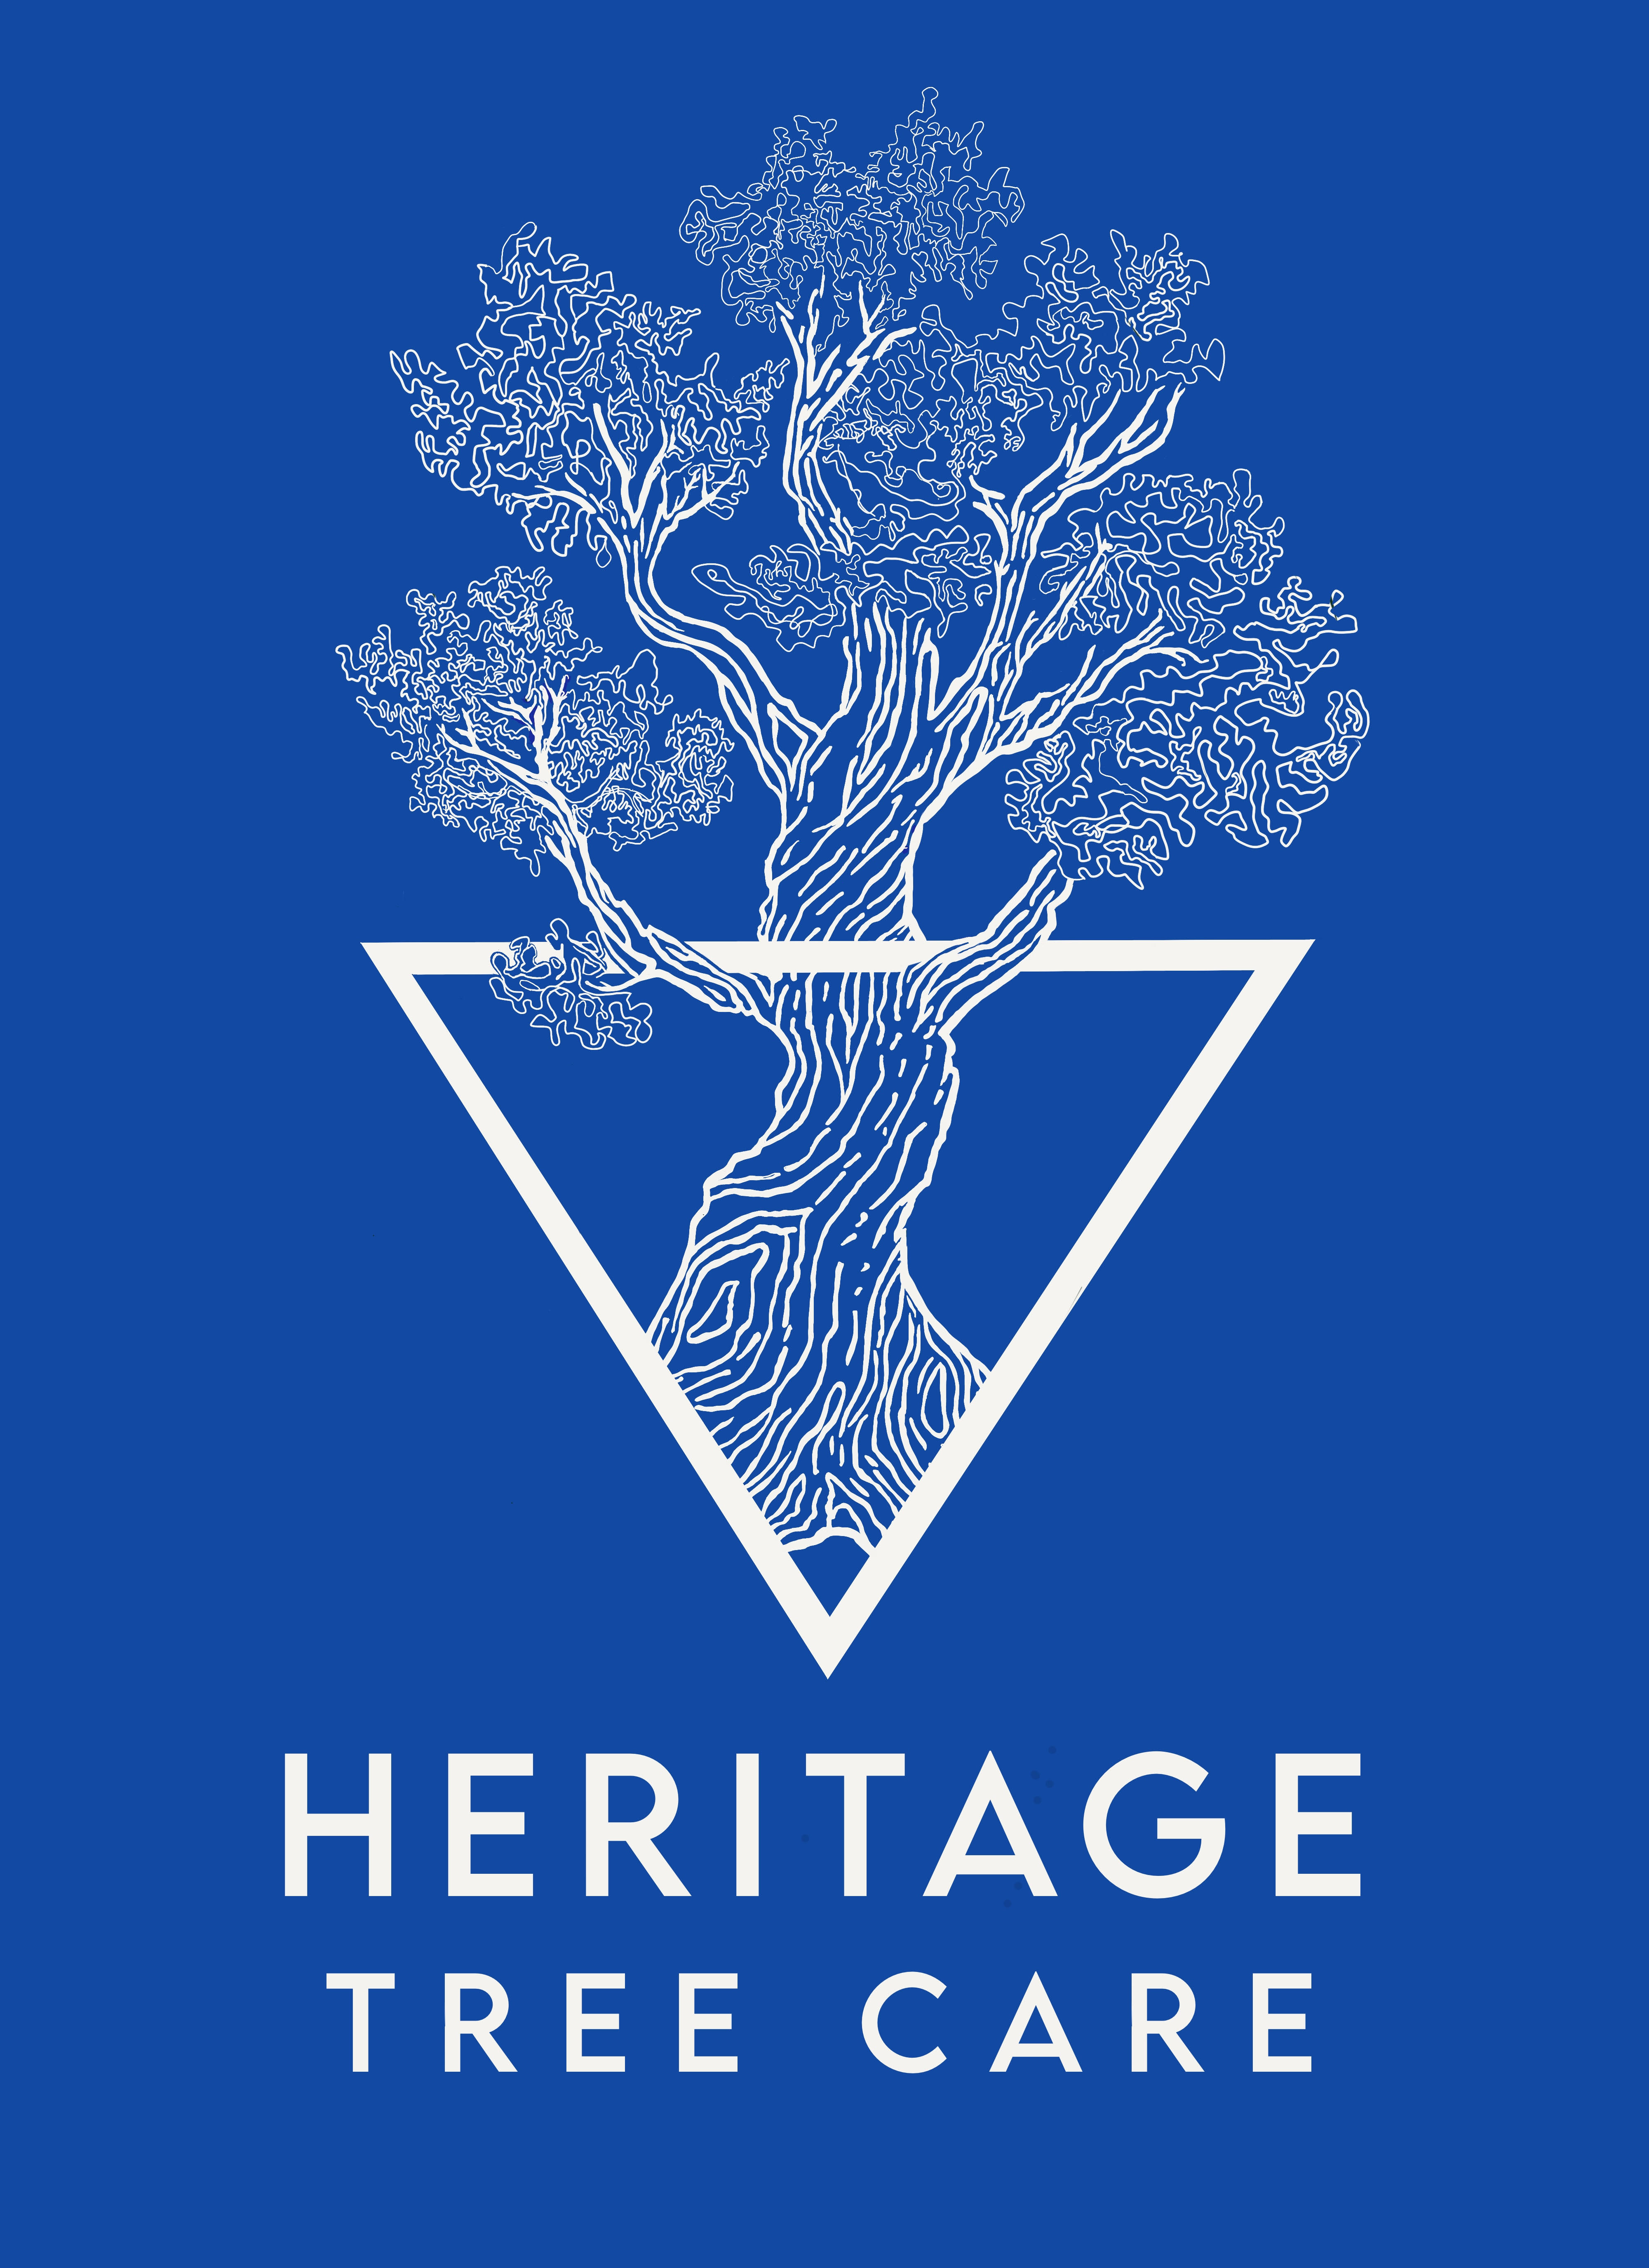 Heritage Tree Care Ltd.